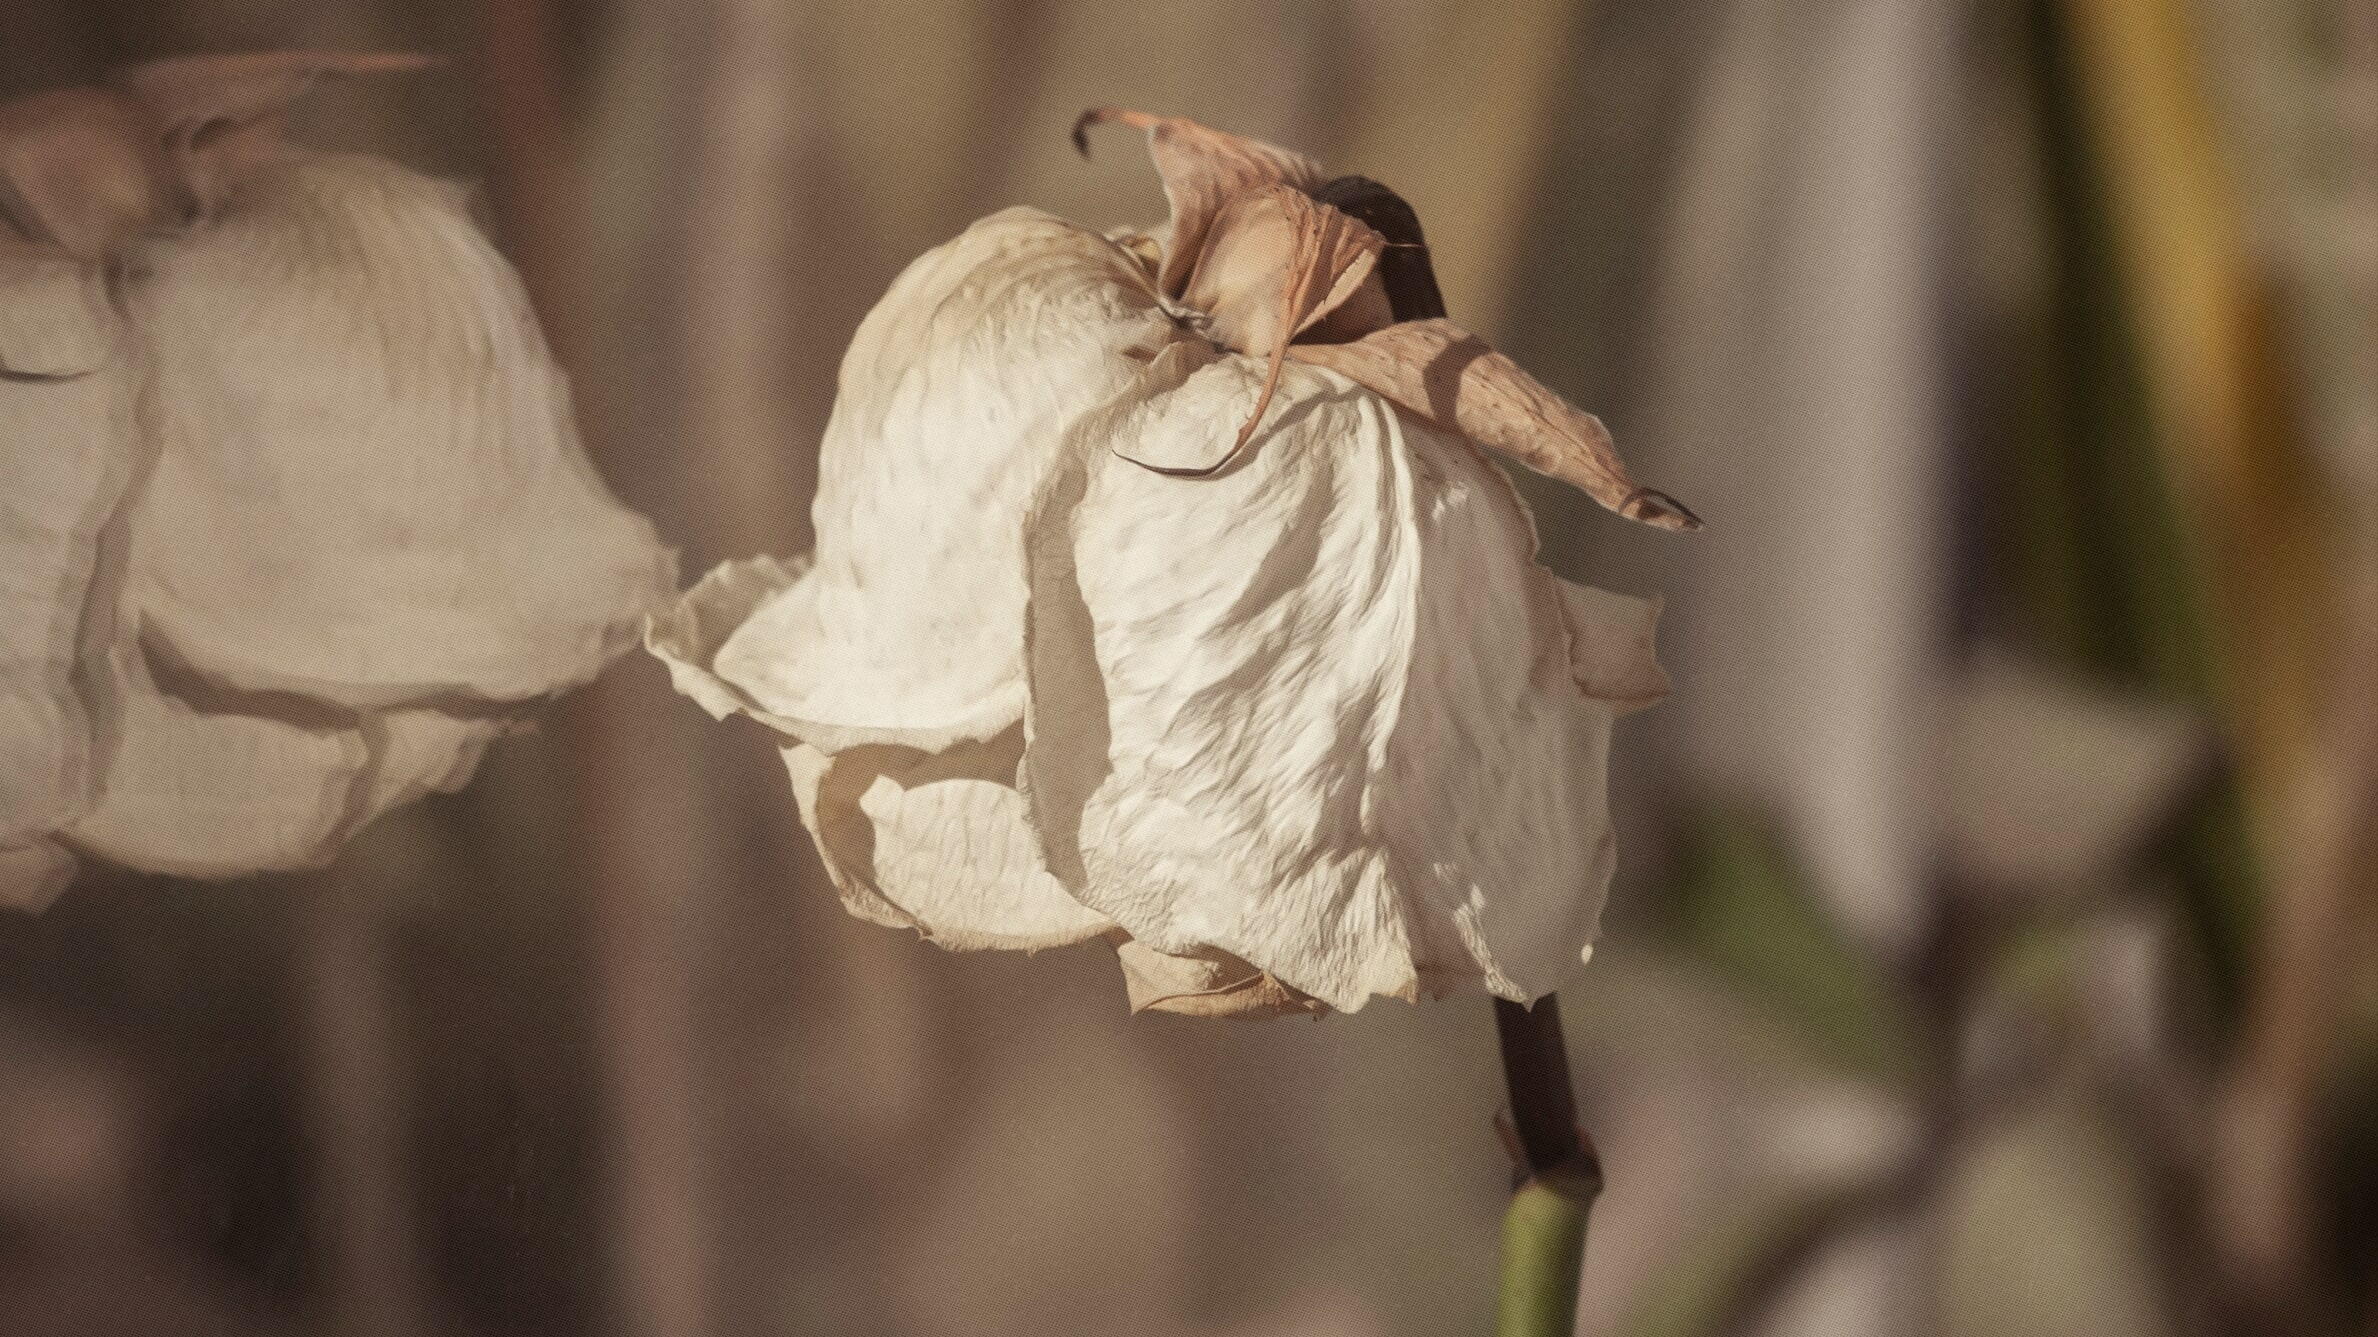 Адаптация комнатных роз: как сохранить капризный цветок в горшке?